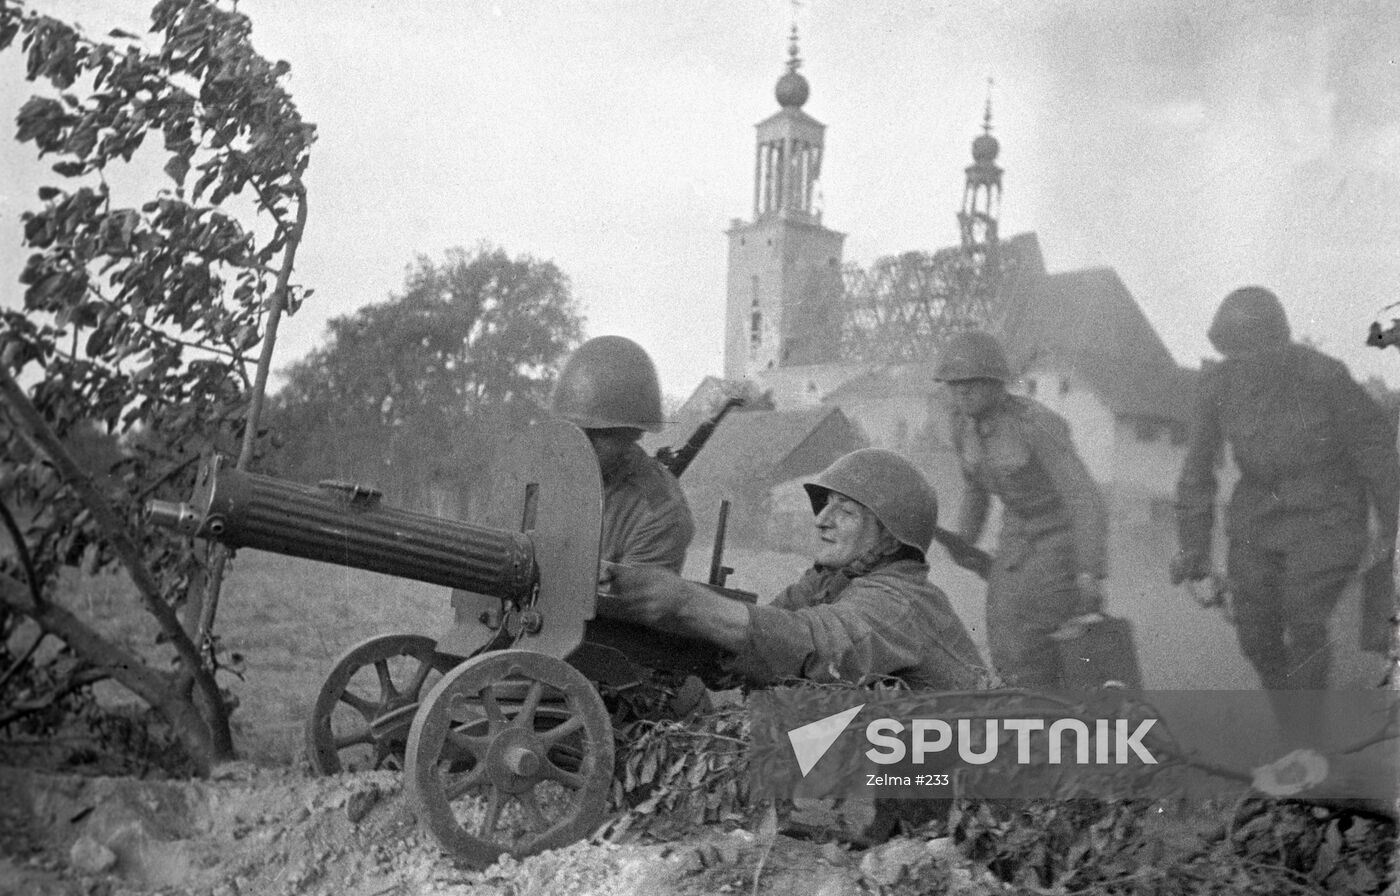 WWII MACHINE-GUN SOLDIERS WARSAW BATTLE